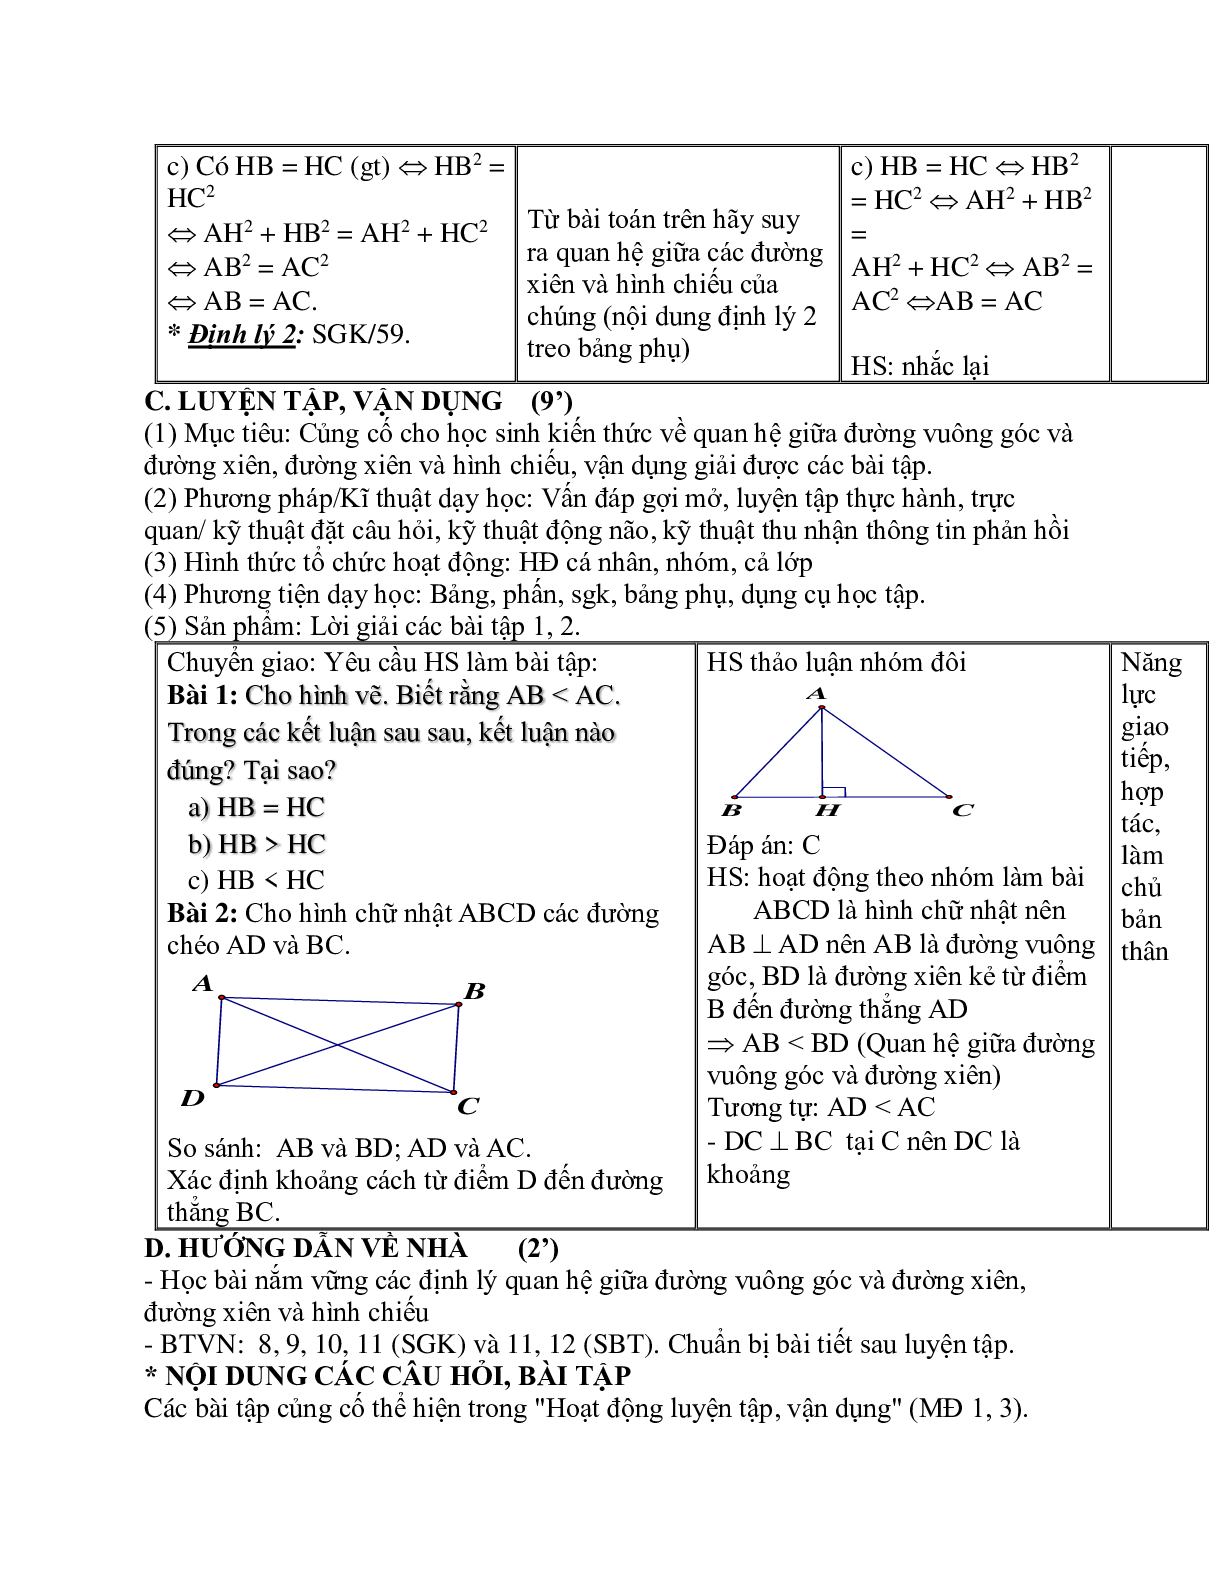 Giáo án Toán học 7 bài 2: Quan hệ giữa đường vuông góc và đường xiên, đường xiên và hình chiếu hay nhất (trang 5)